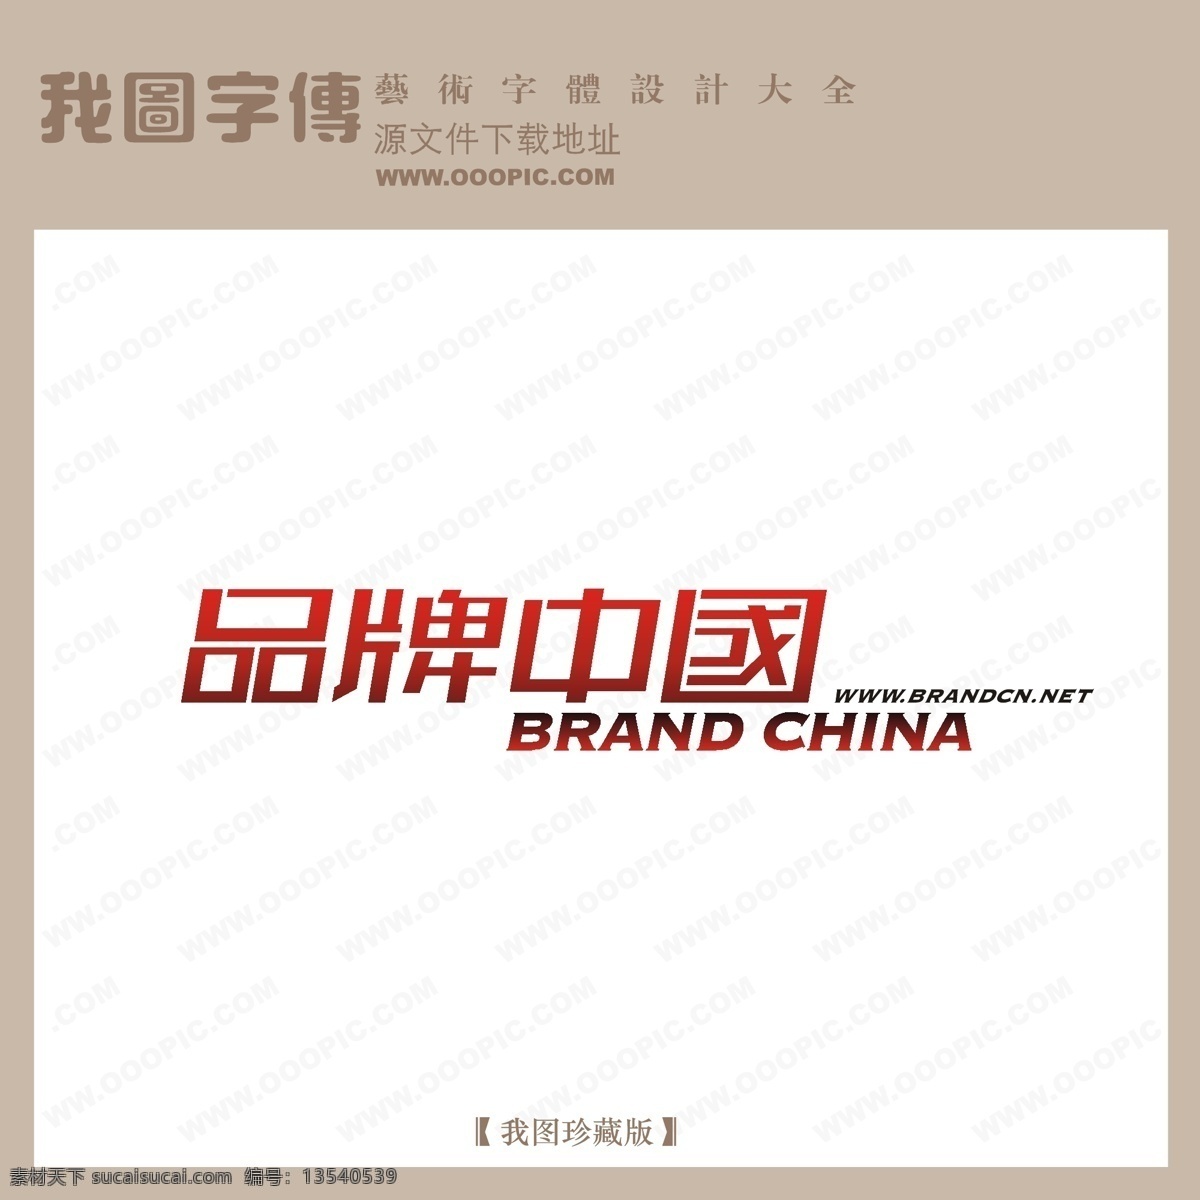 艺术 艺术字 艺术字图片 艺术字下载 字 在线 生成 制作 品牌 中国 矢量图